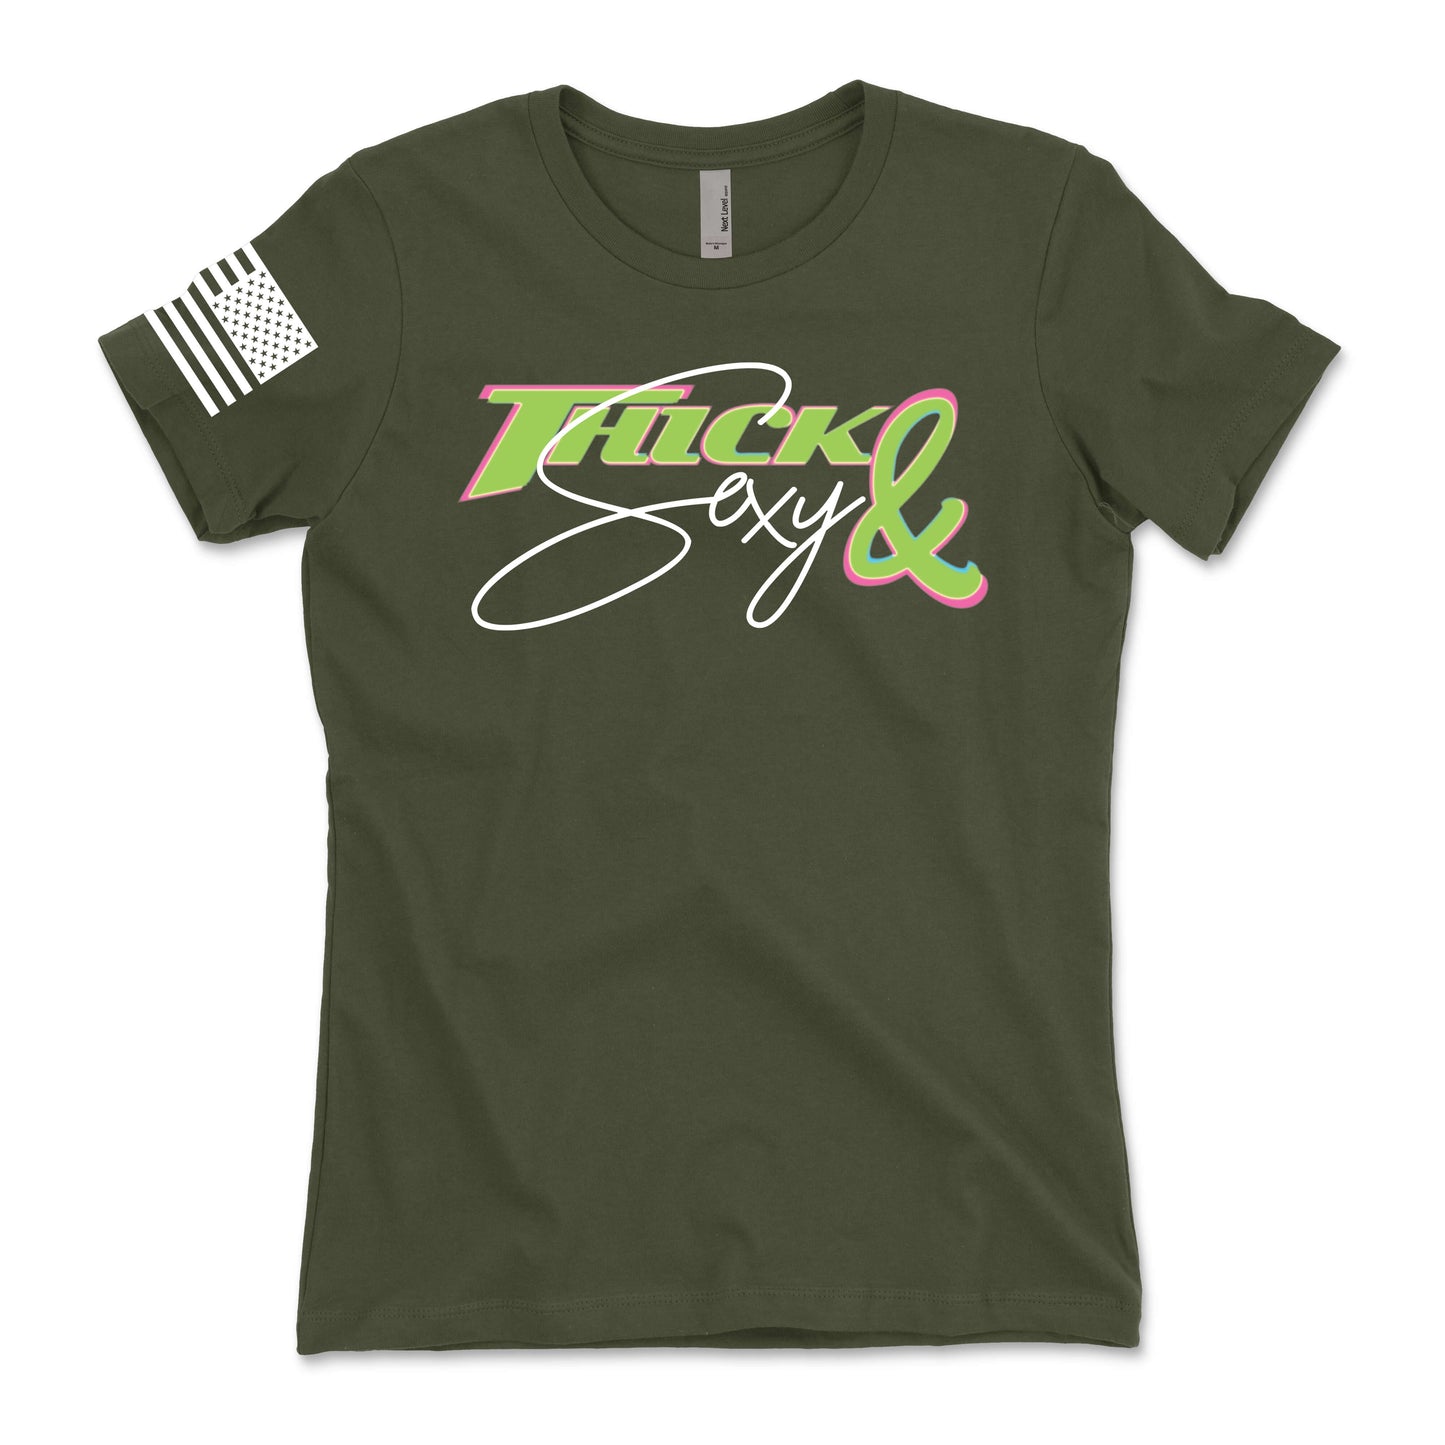 The CLASSIC "Fresh" Women's T-Shirt